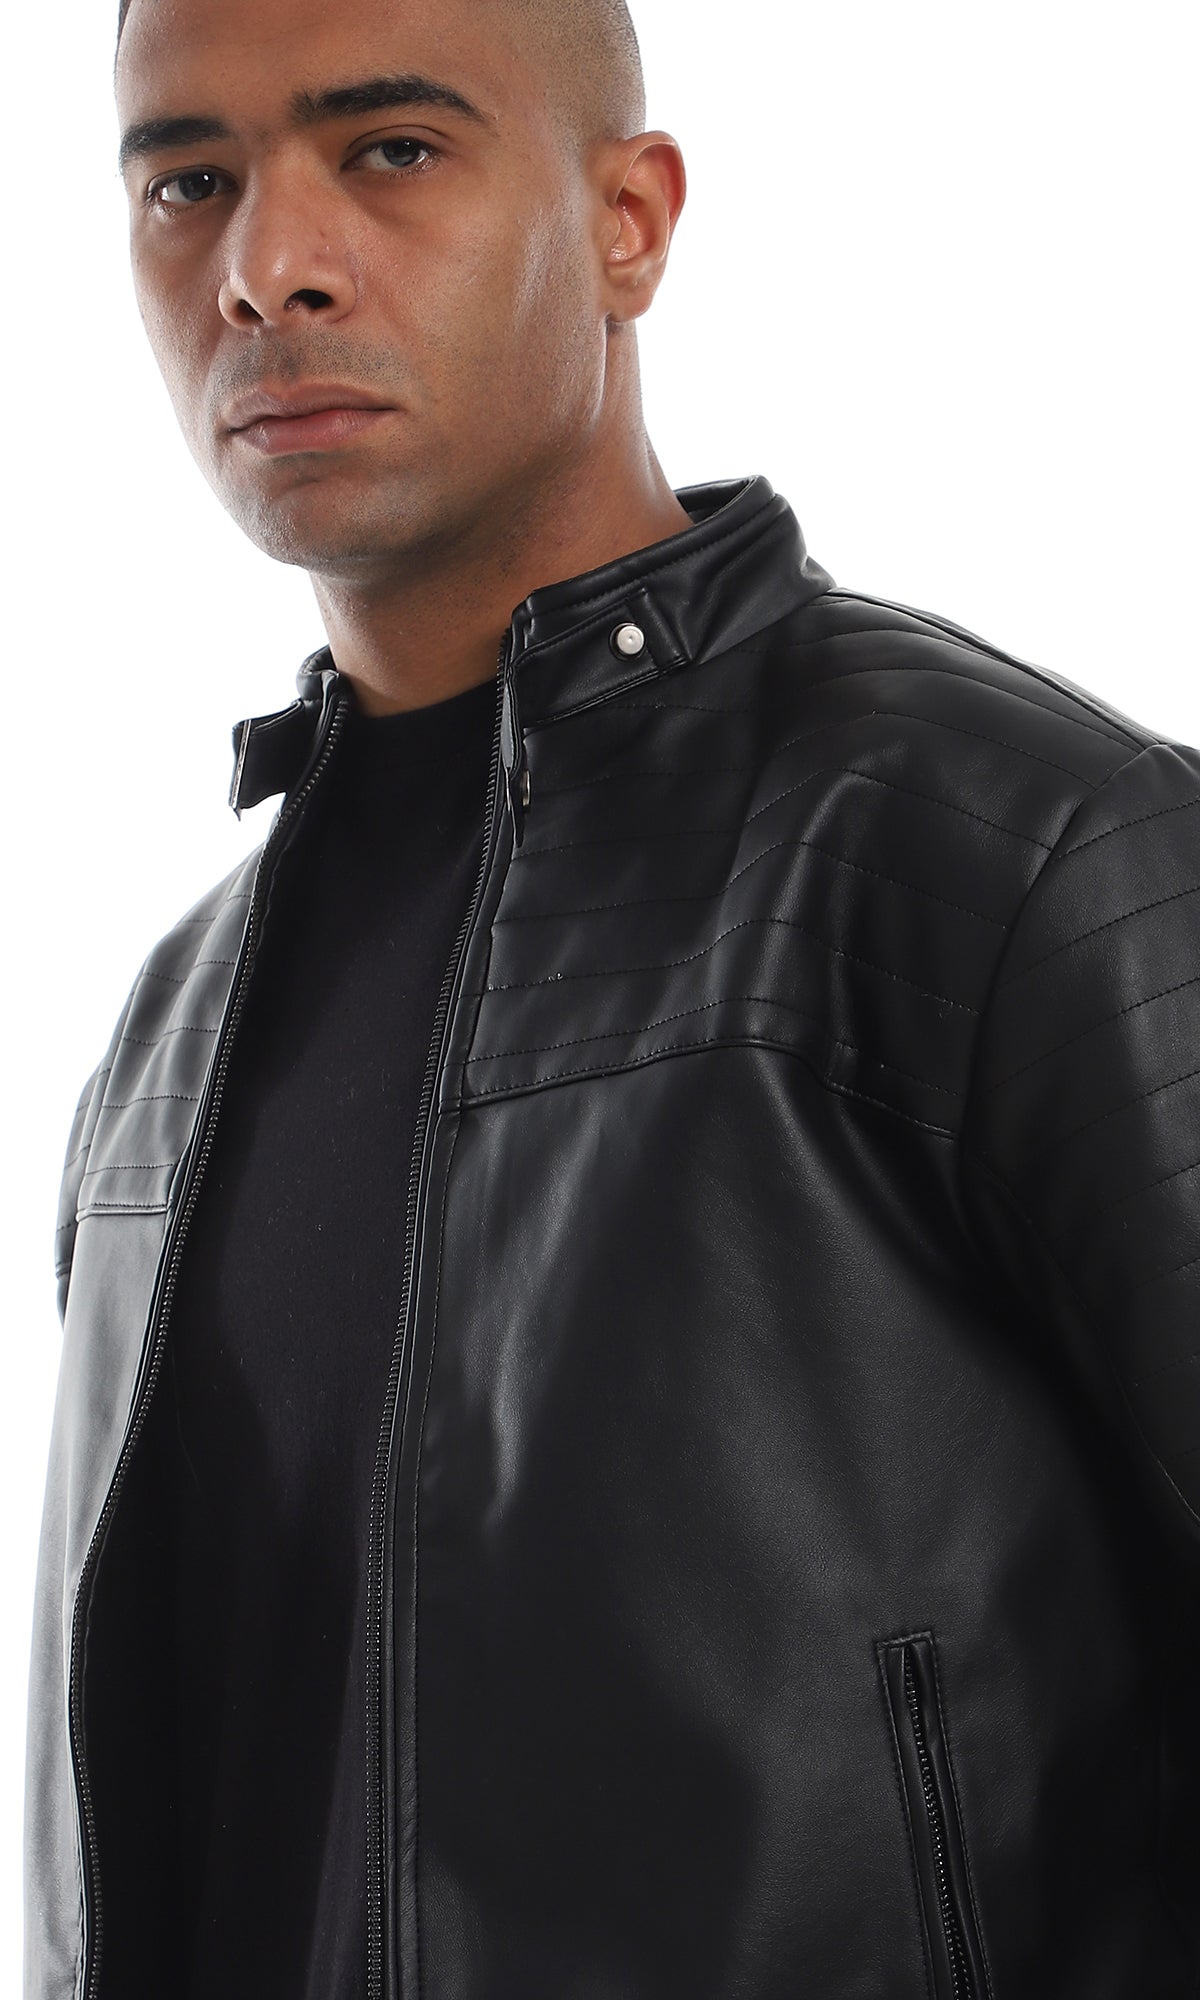 O156165 Stitched Details 2 Side Zipper Pocket Black Leather Jacket